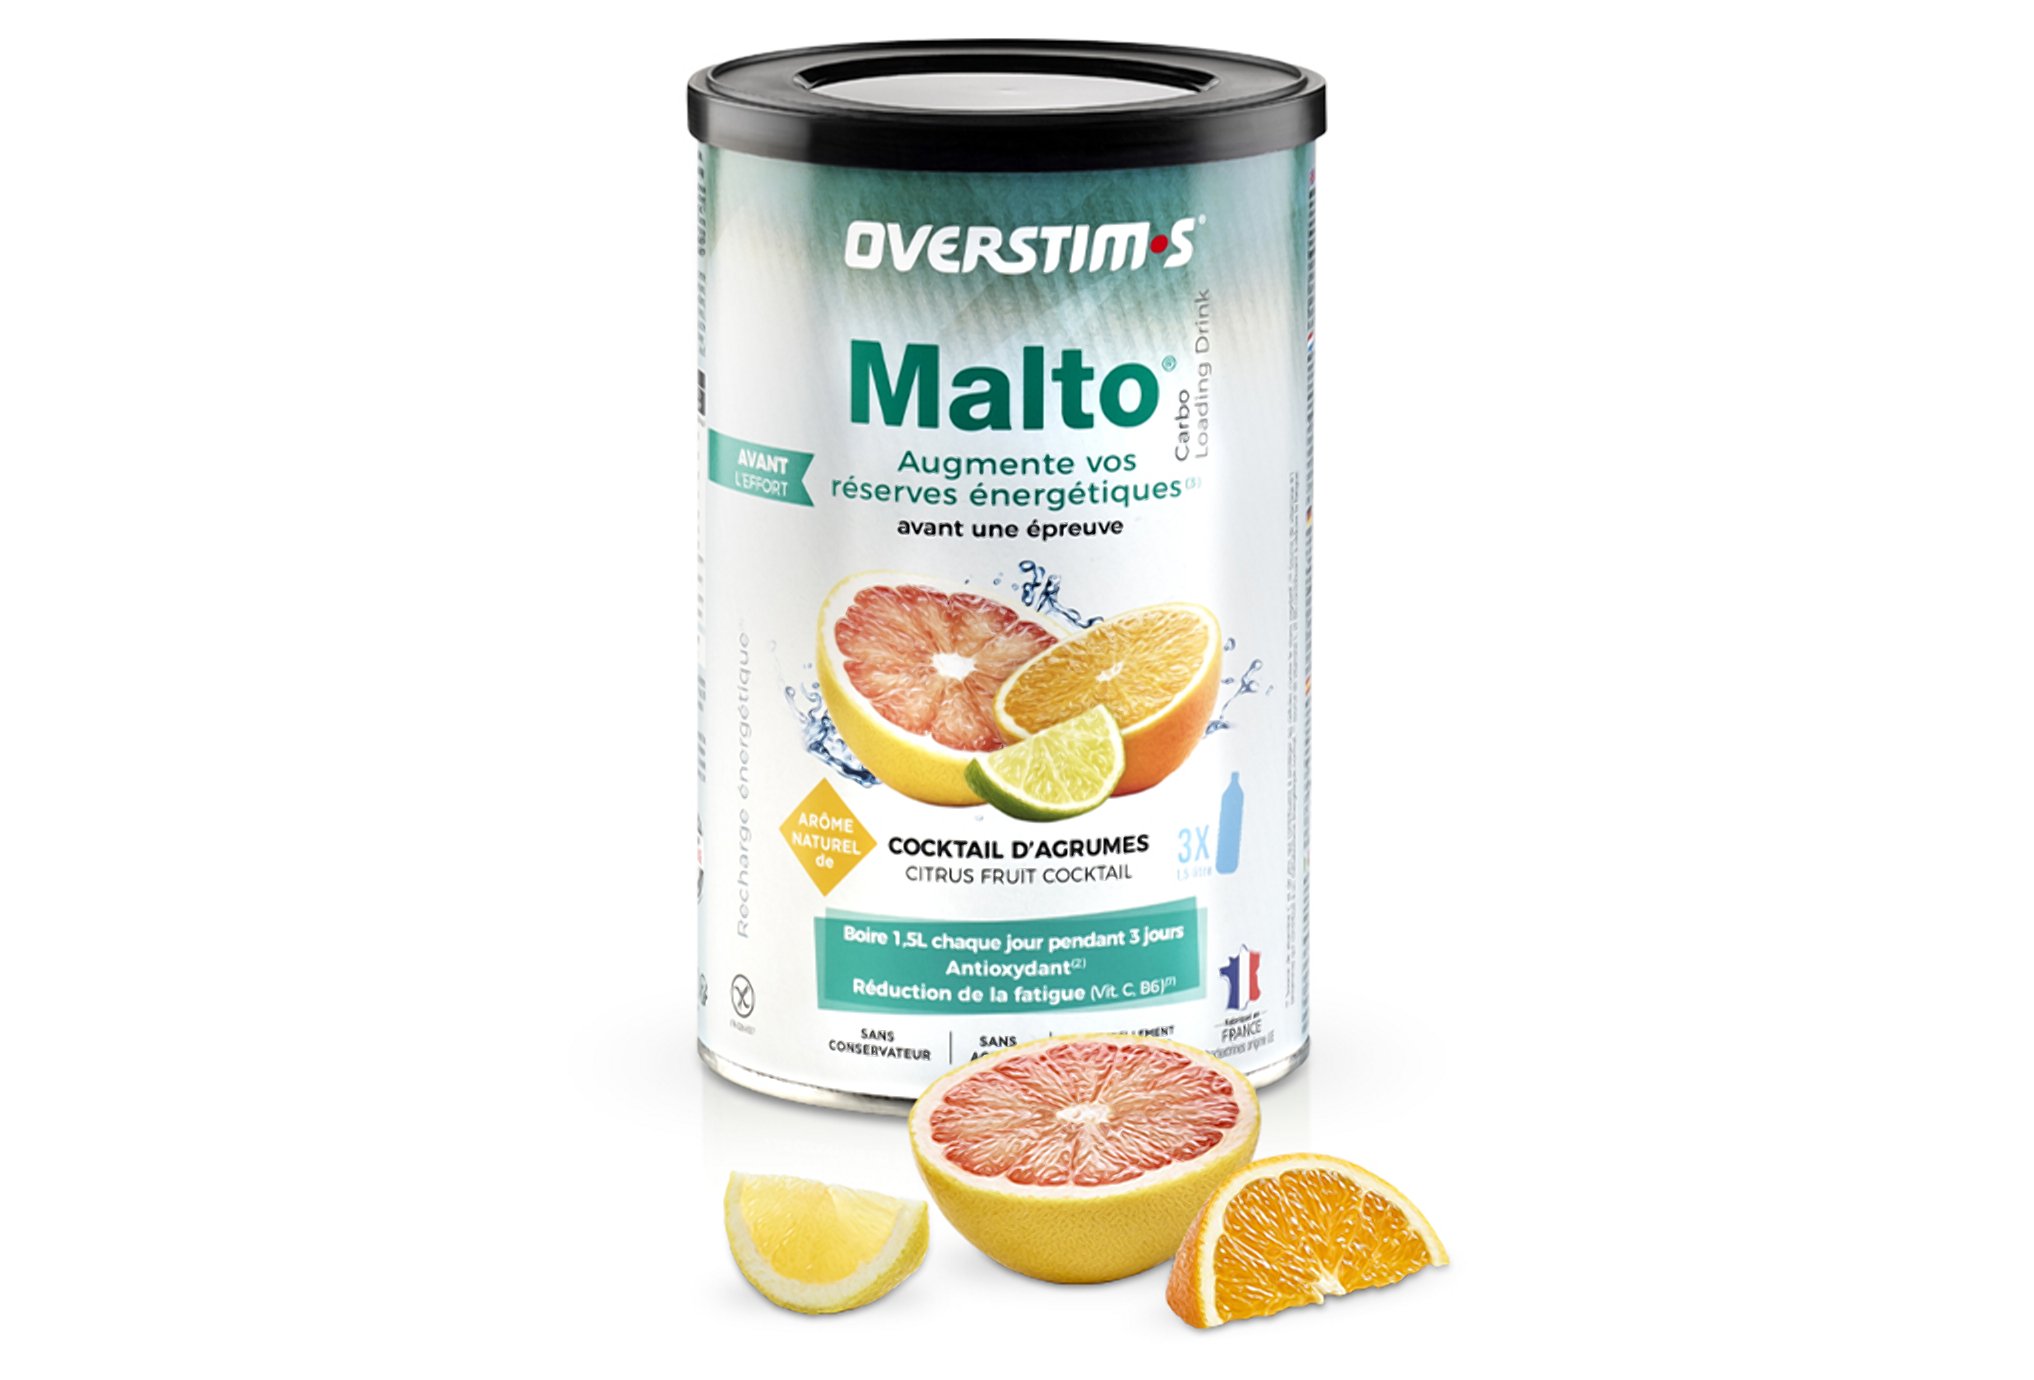 OVERSTIMS Malto Antioxydant 500 g - Cocktail d'agrumes Diététique Préparation